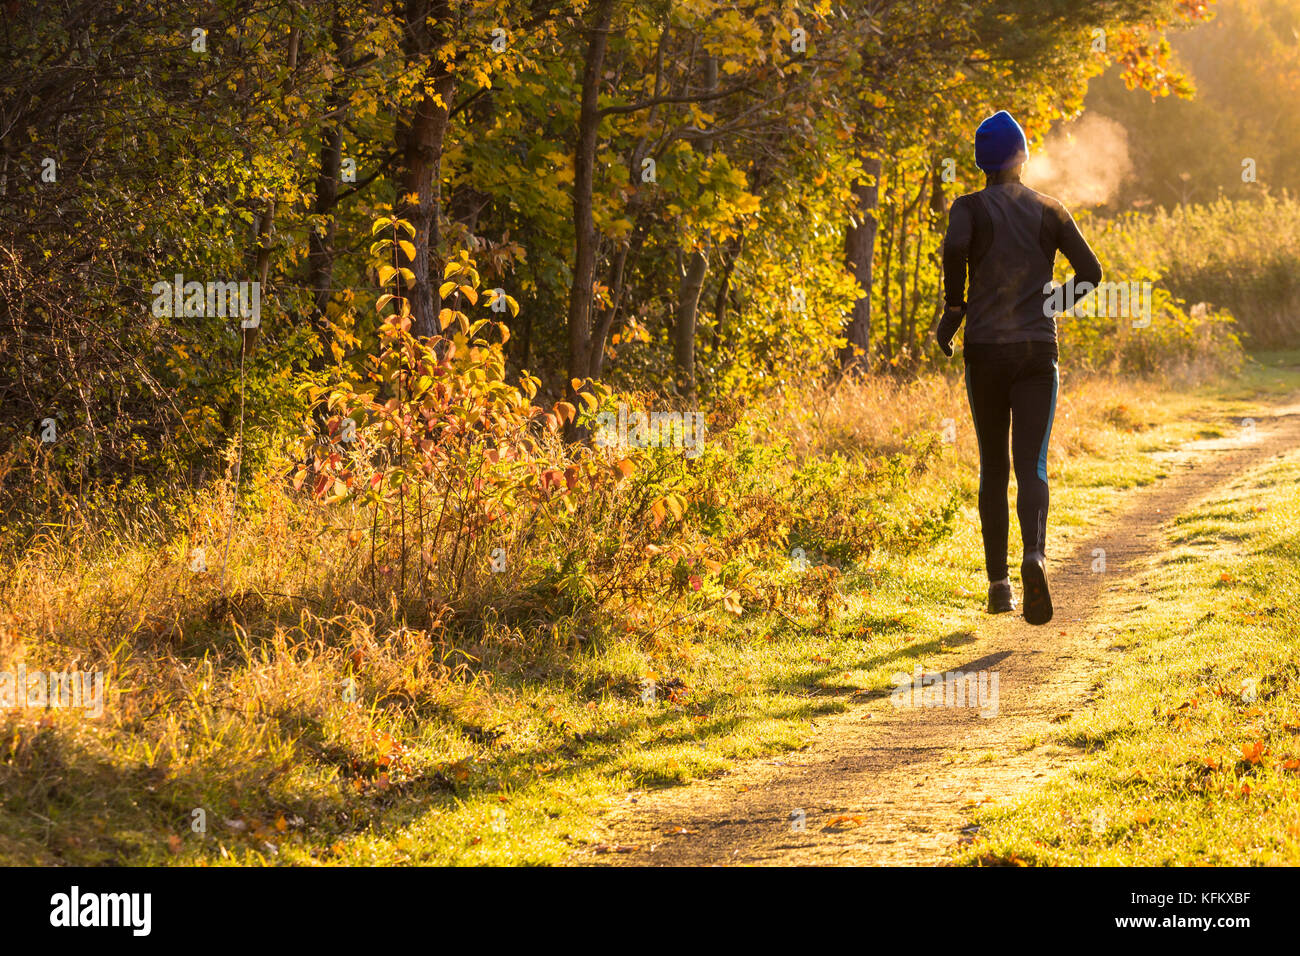 60 Jahre alten Jogger, Läufer am frühen Morgen laufen als Atem kondensiert  gegen die kalte Luft an einem frostigen Morgen. Großbritannien  Stockfotografie - Alamy